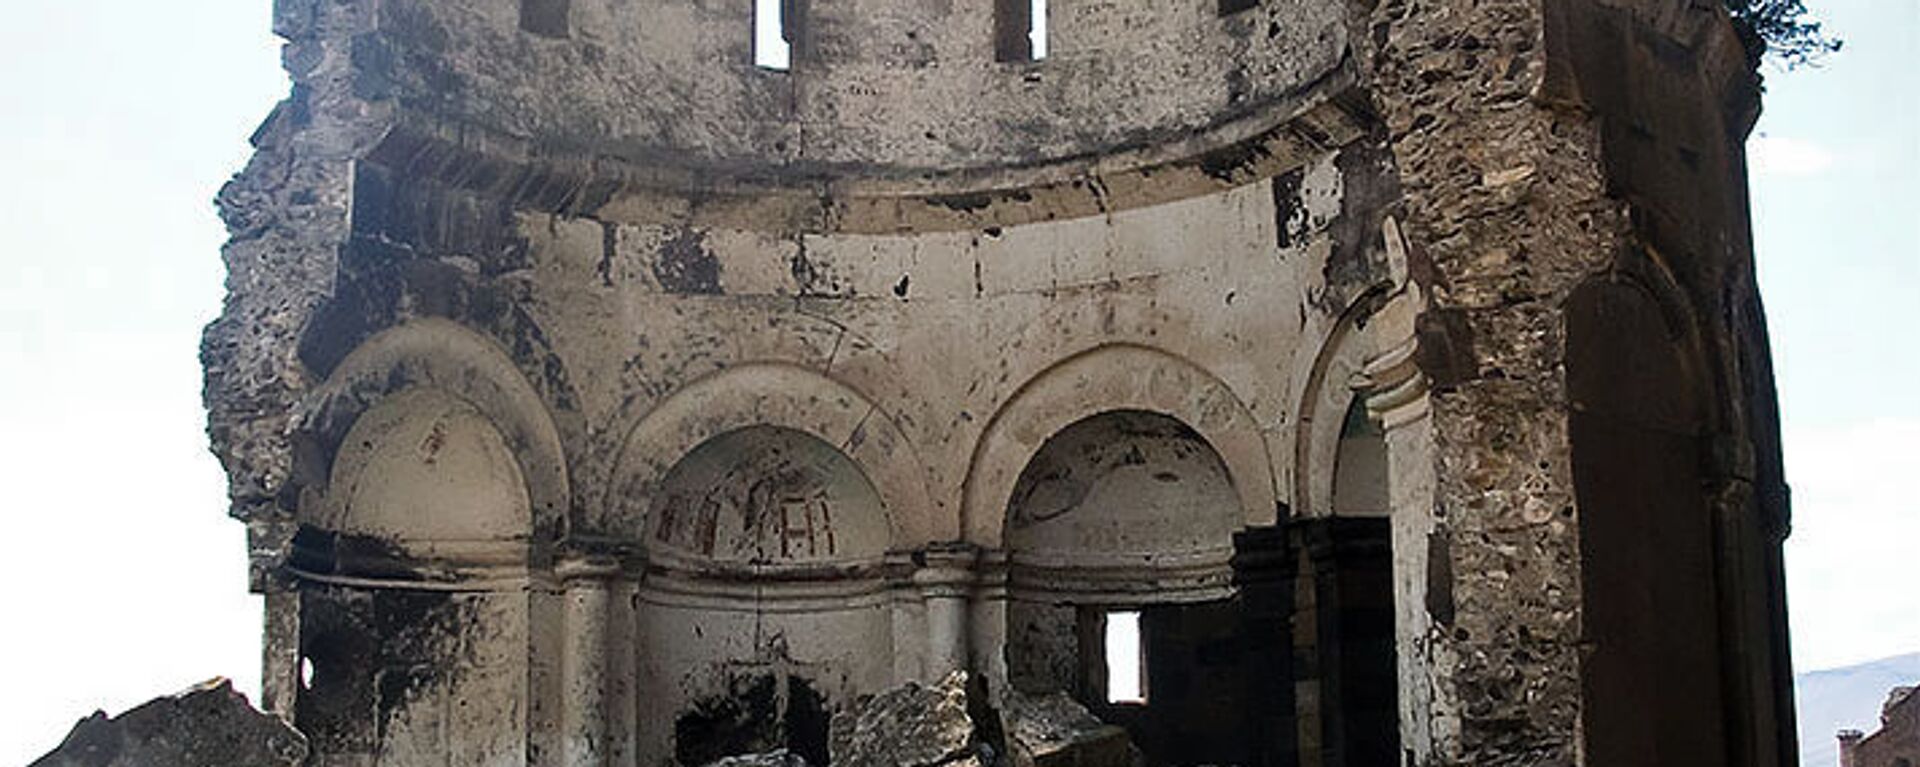 Развалины армянской церкви в Ани - Sputnik Армения, 1920, 28.01.2021